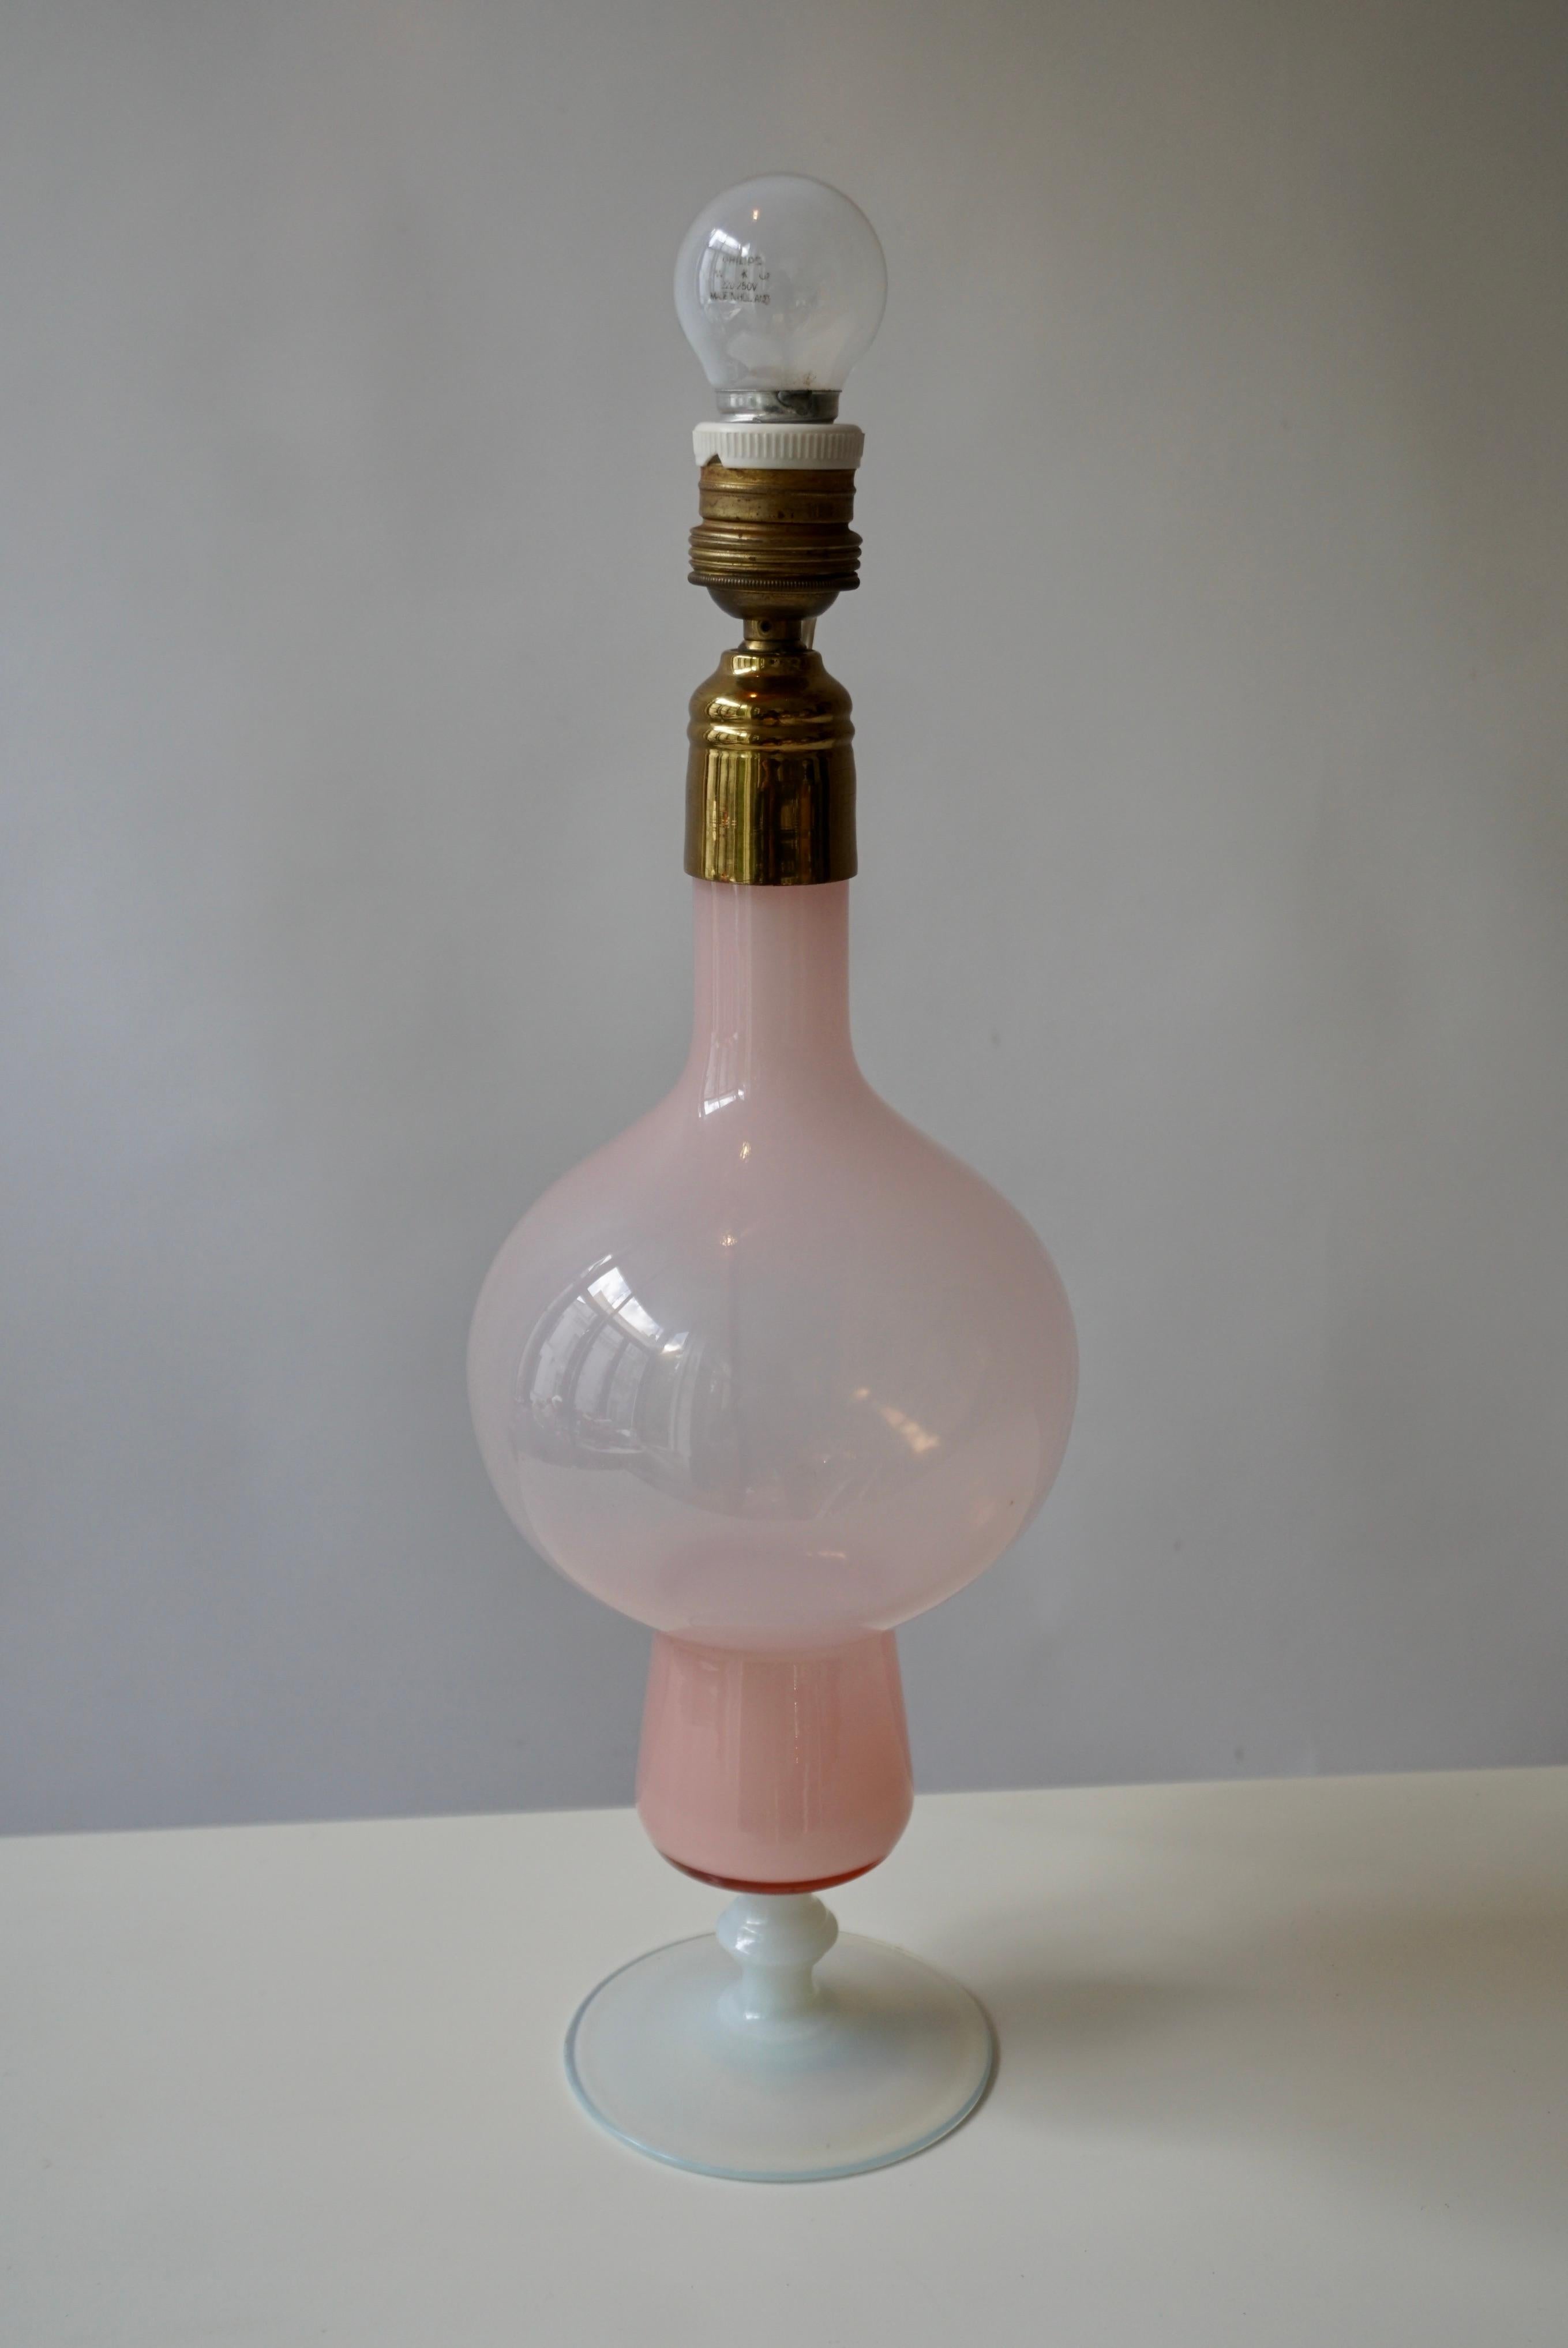 Lampe de table italienne en opaline rose des années 1950.
 
Mesures : 
Hauteur du corps : 15.7